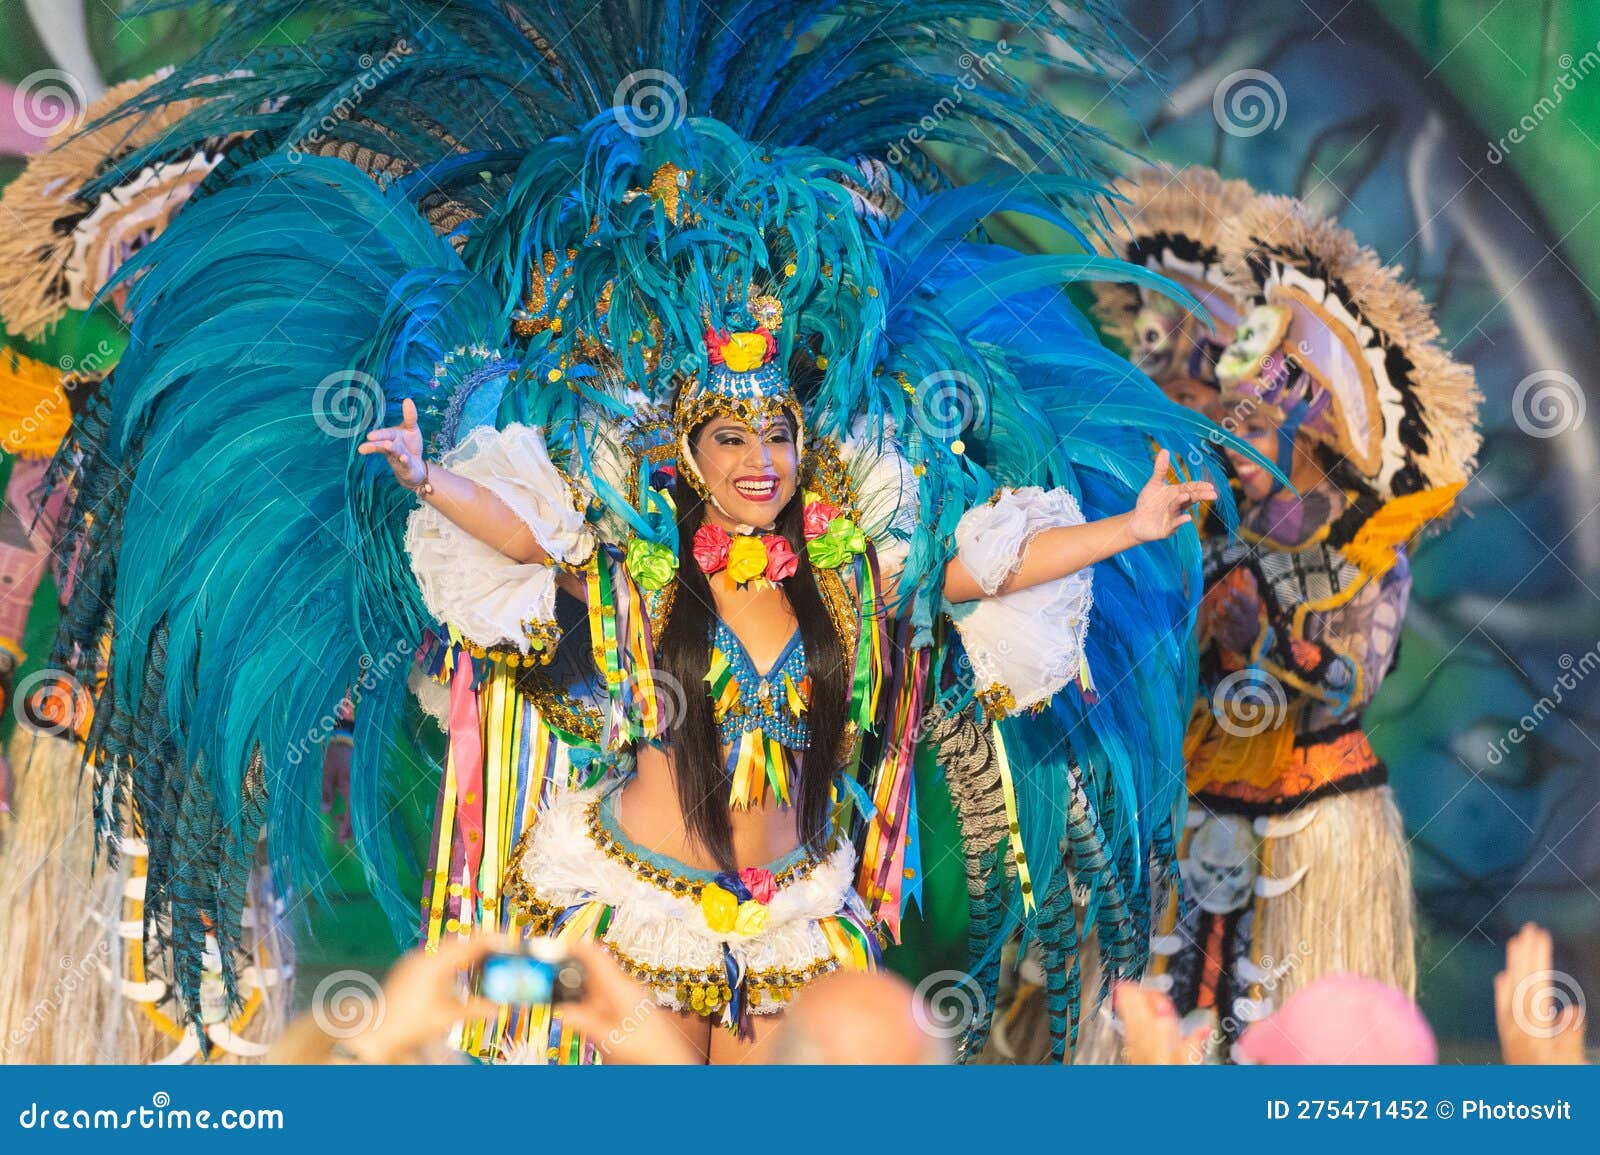 Parintine Brasile Dicembre 06 2015 : Carnevale Samba Brasiliano Ballerino  in Costume Da Piume Fotografia Editoriale - Immagine di colorato, brasile:  275471452